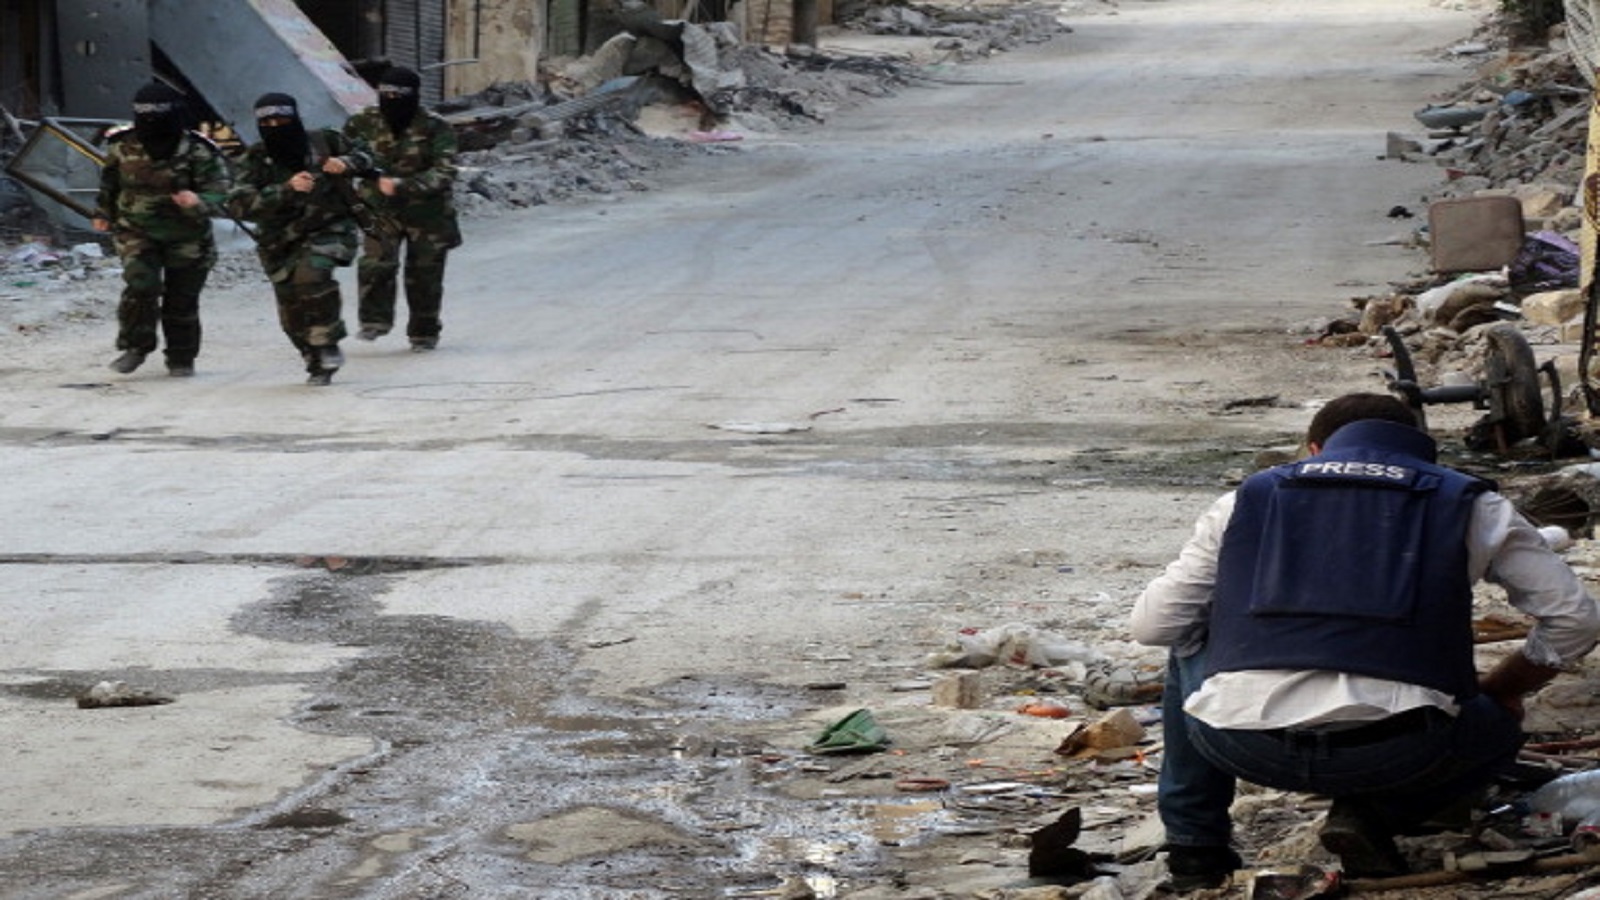 سوريا: مقتل 7 إعلاميين الشهر الماضي.. و"داعش" يعدم صحافيين